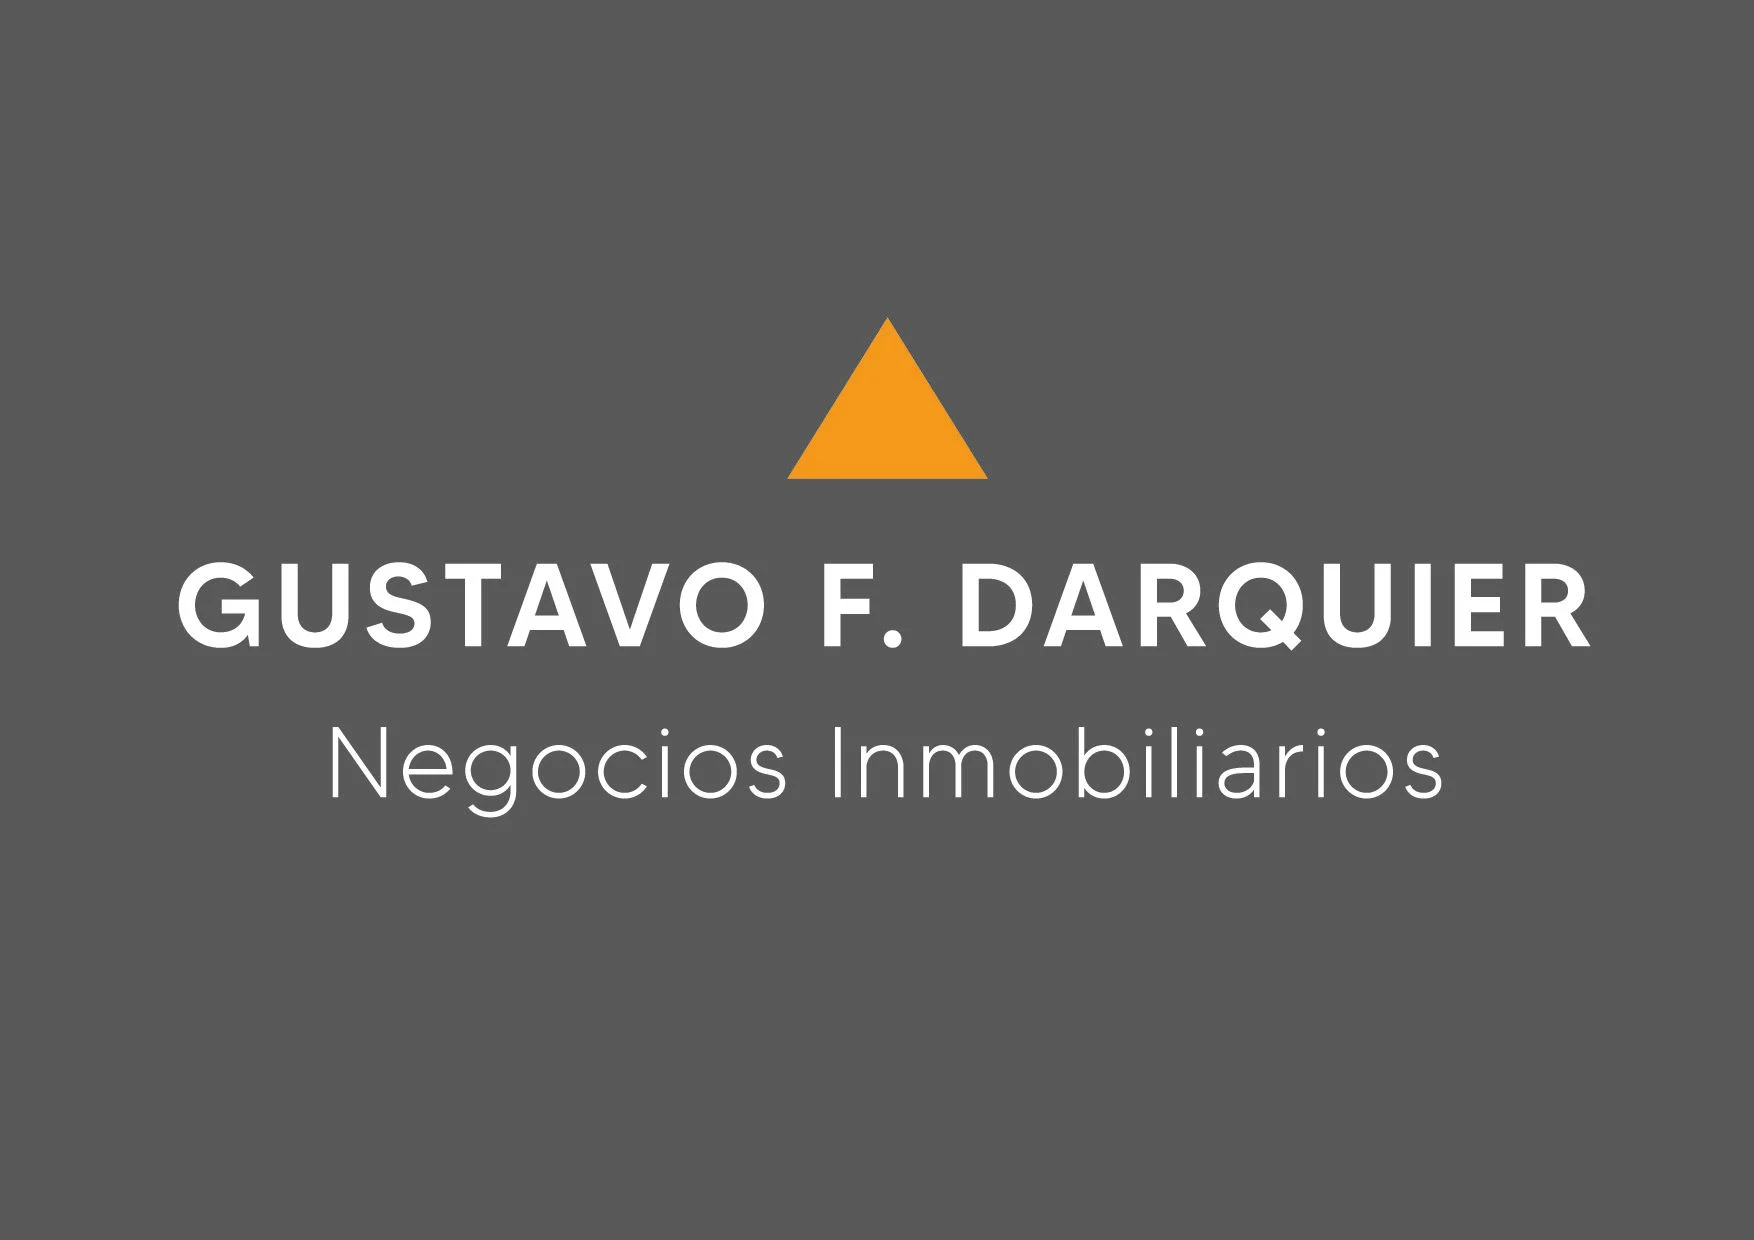 Gustavo F. Darquier Negocios Inmobiliarios